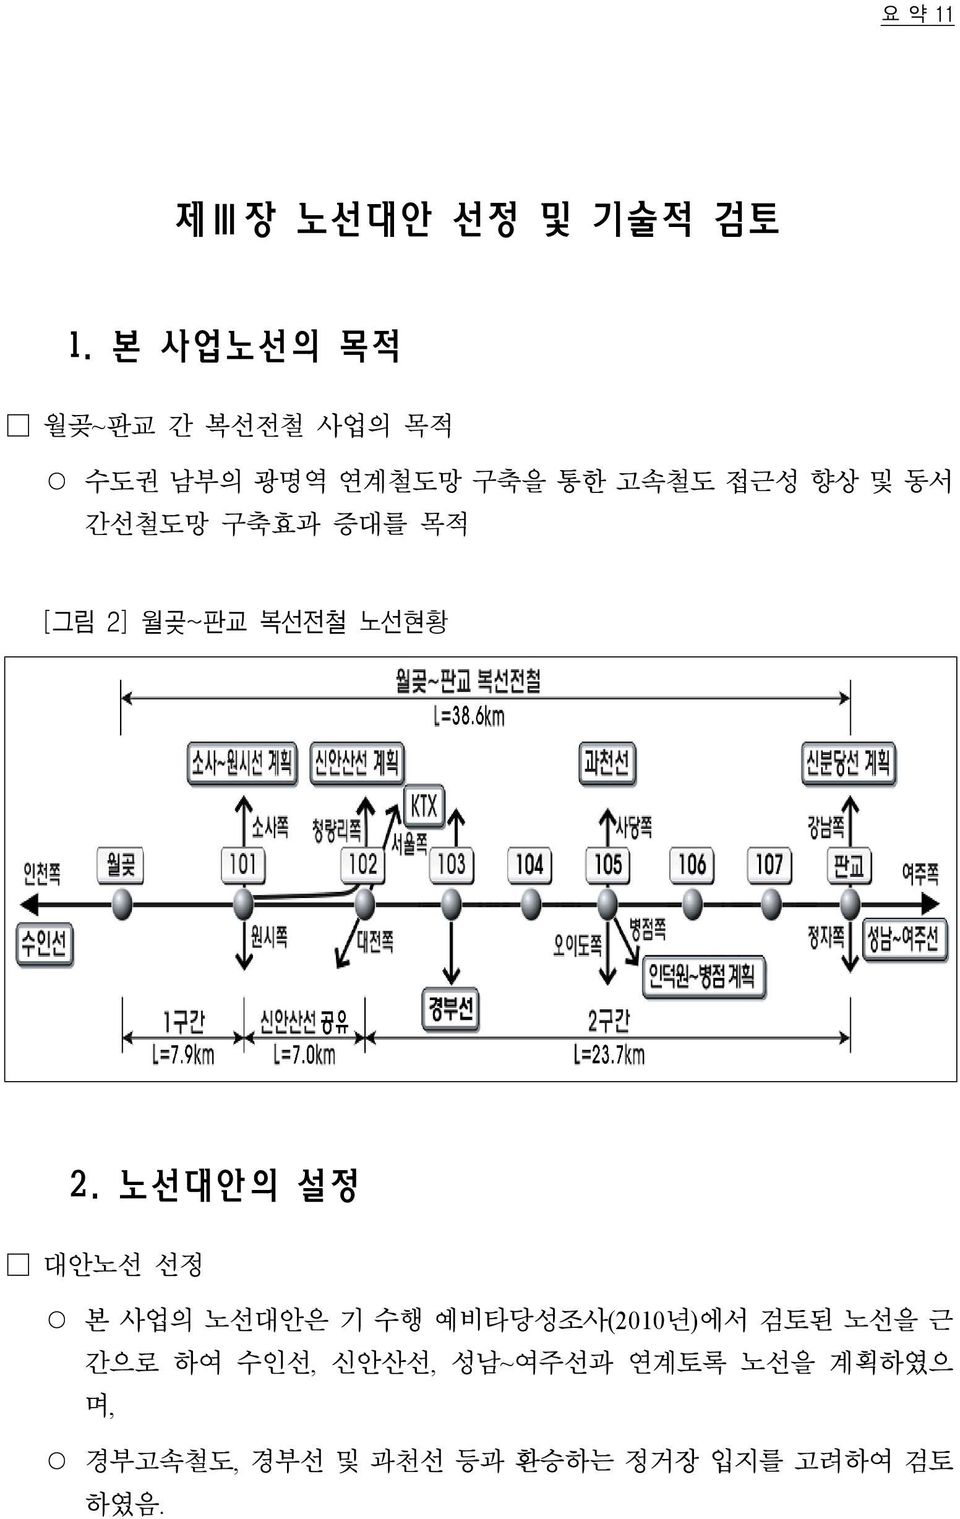 간선철도망 구축효과 증대를 목적 [그림 2] 월곶~판교 복선전철 노선현황 2.